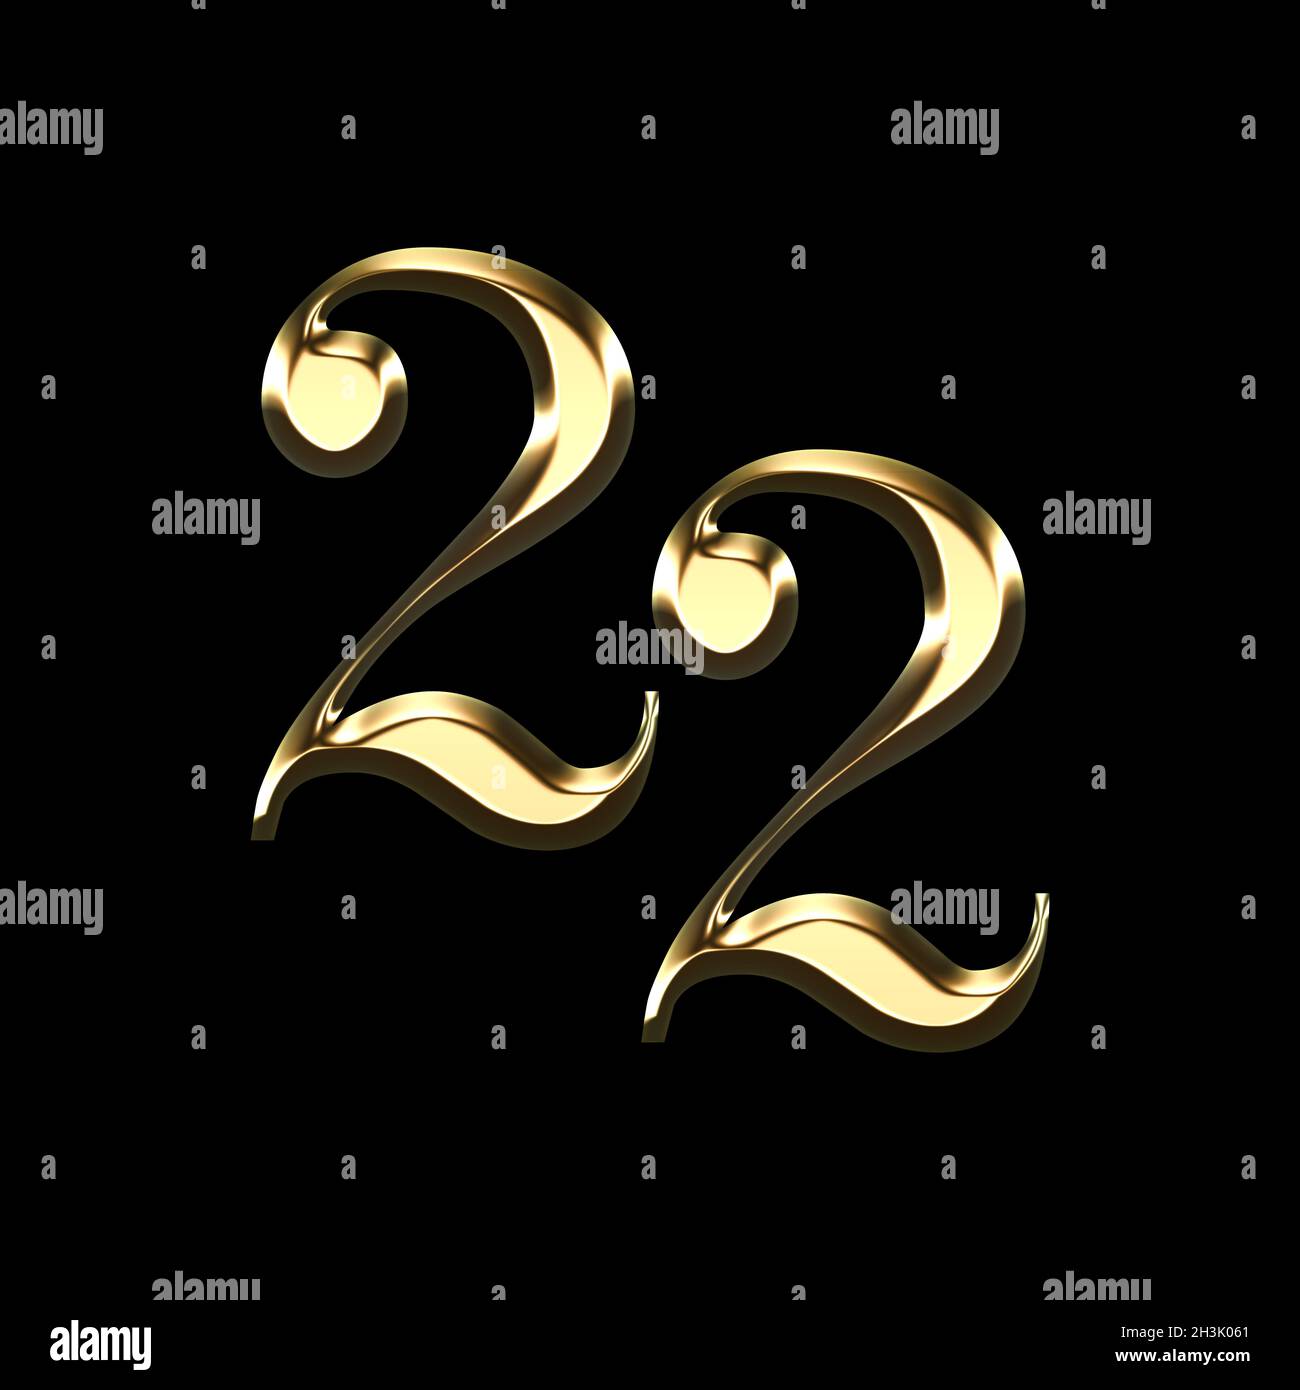 Vela de cumpleaños número 1 con diseño de corona 3D para decoración de  tartas de un año de edad, velas de feliz cumpleaños, aniversarios (corona-1,  dorado) : : Salud y Cuidado Personal